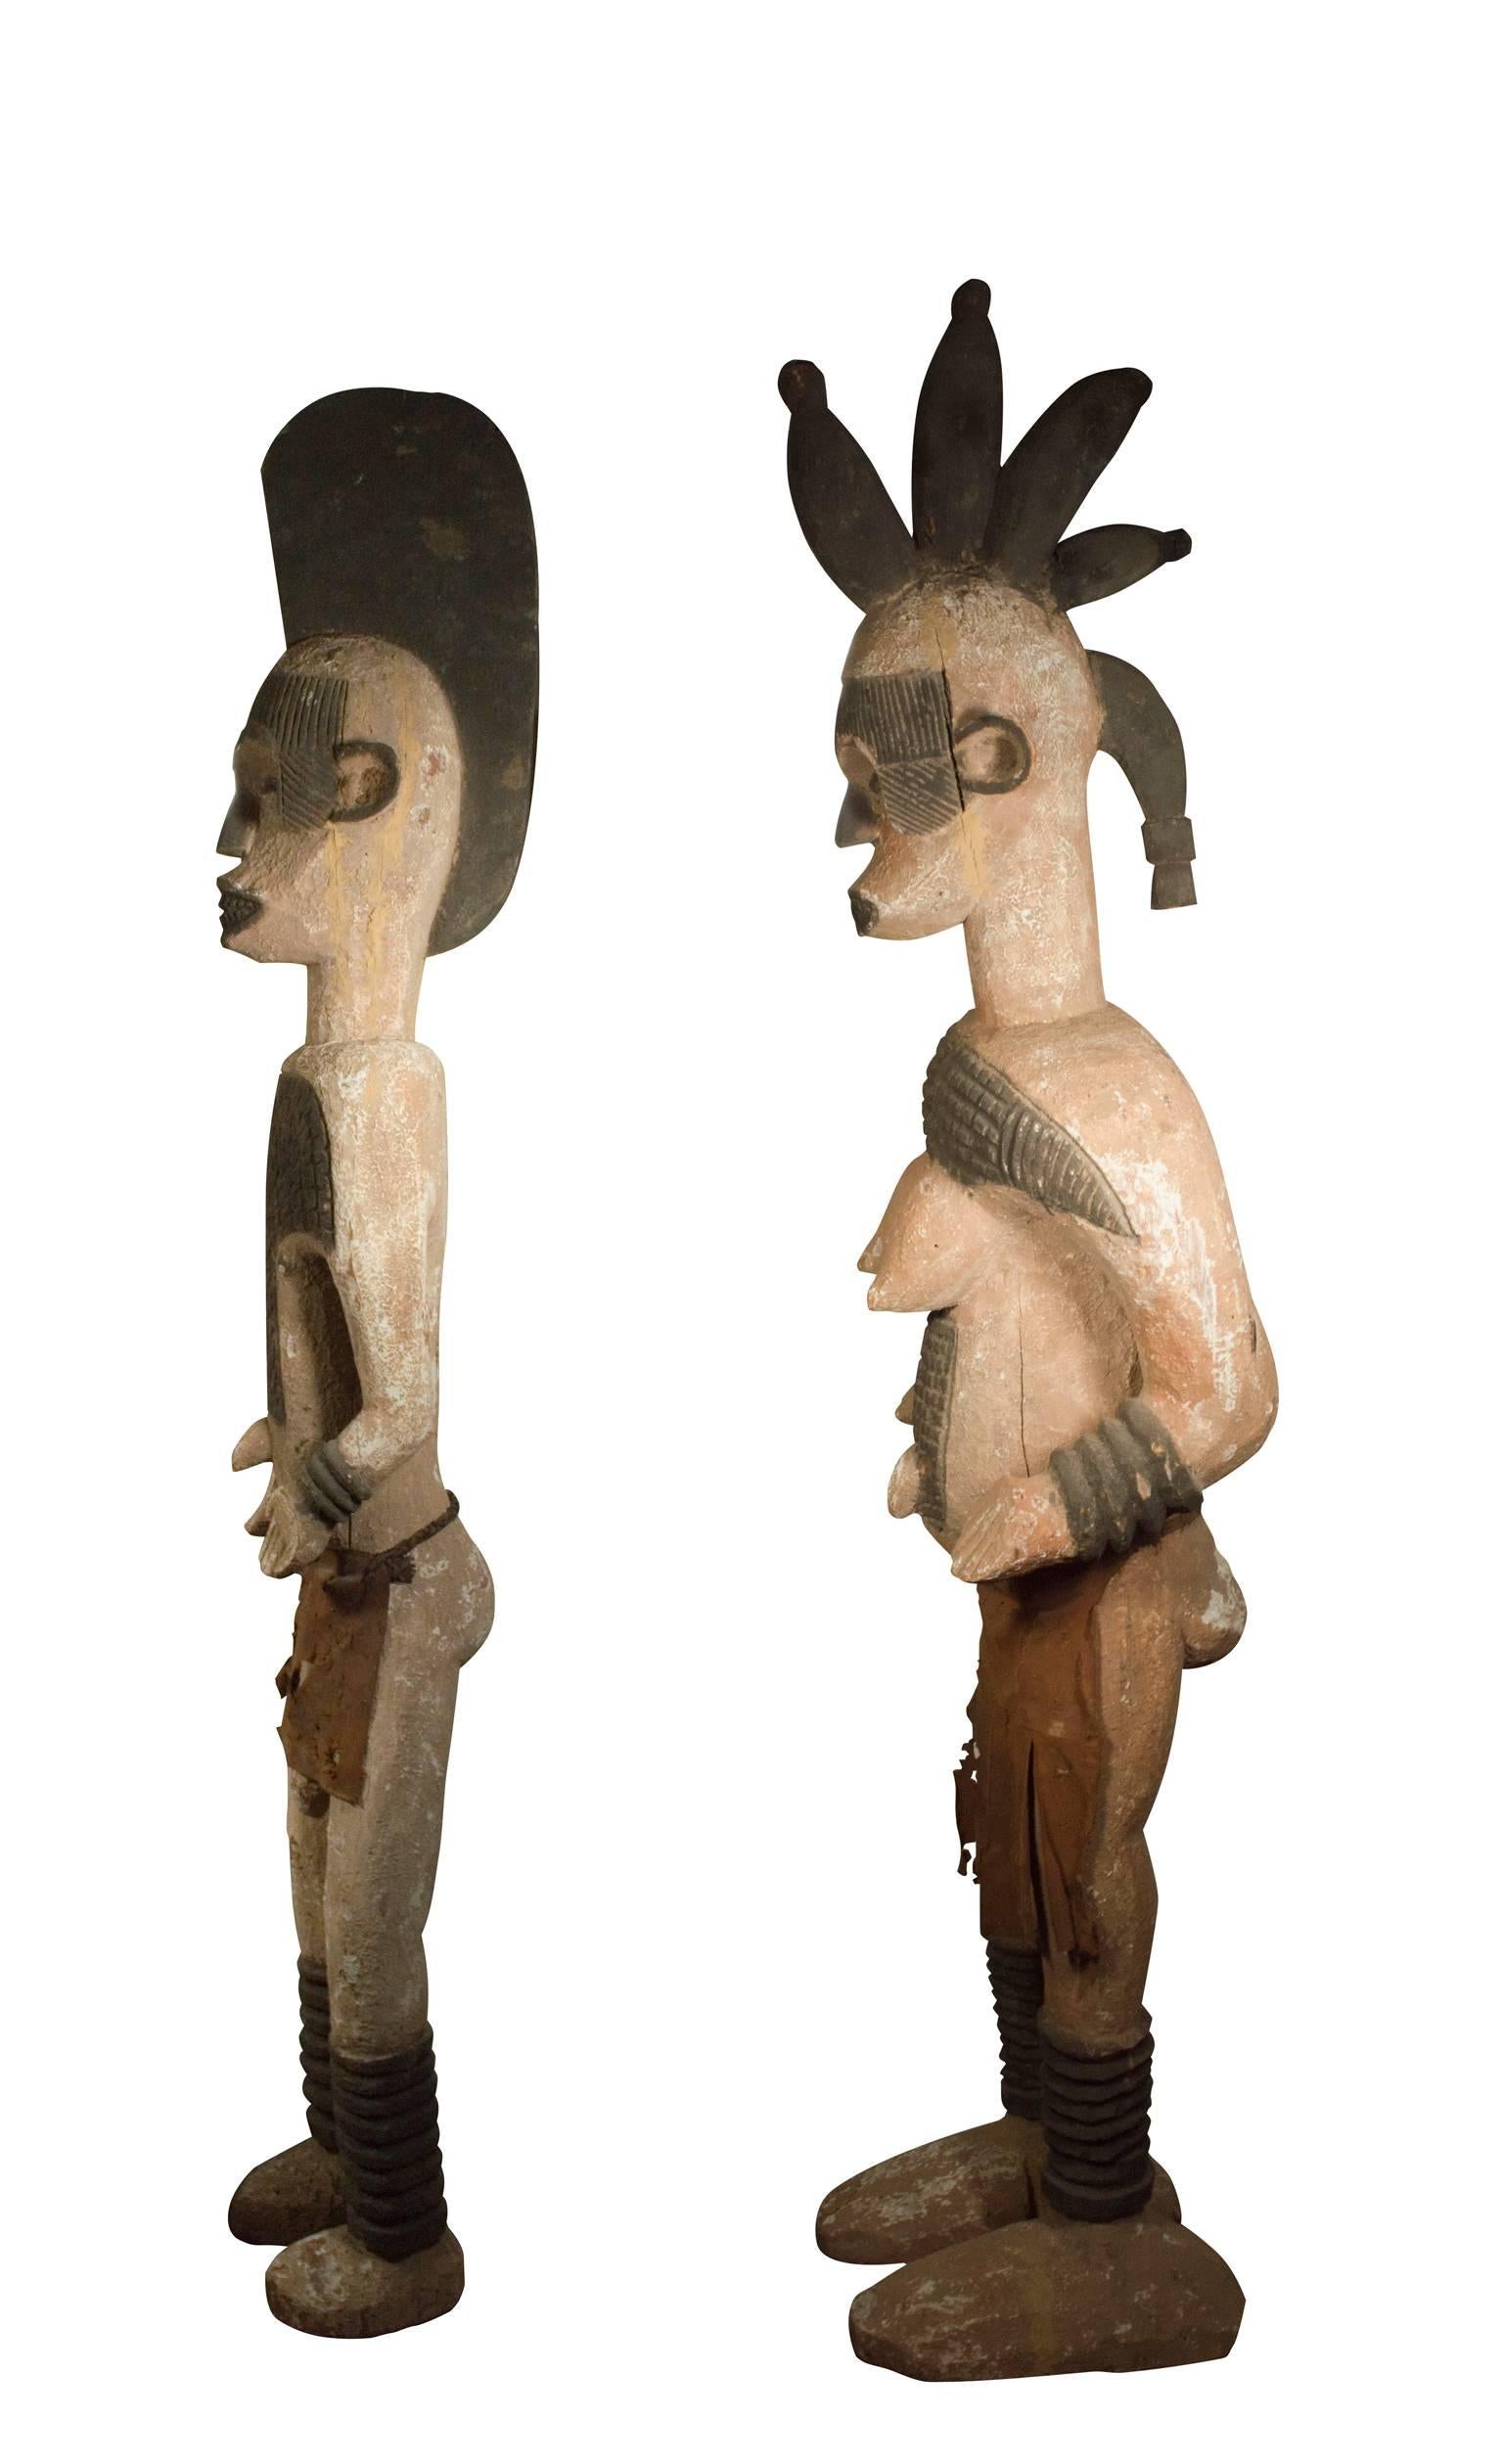 Zwei Ibo (Igbo)-Szenenfiguren, zwei Holzstatuen aus Nigeria  – Sculpture von Unknown